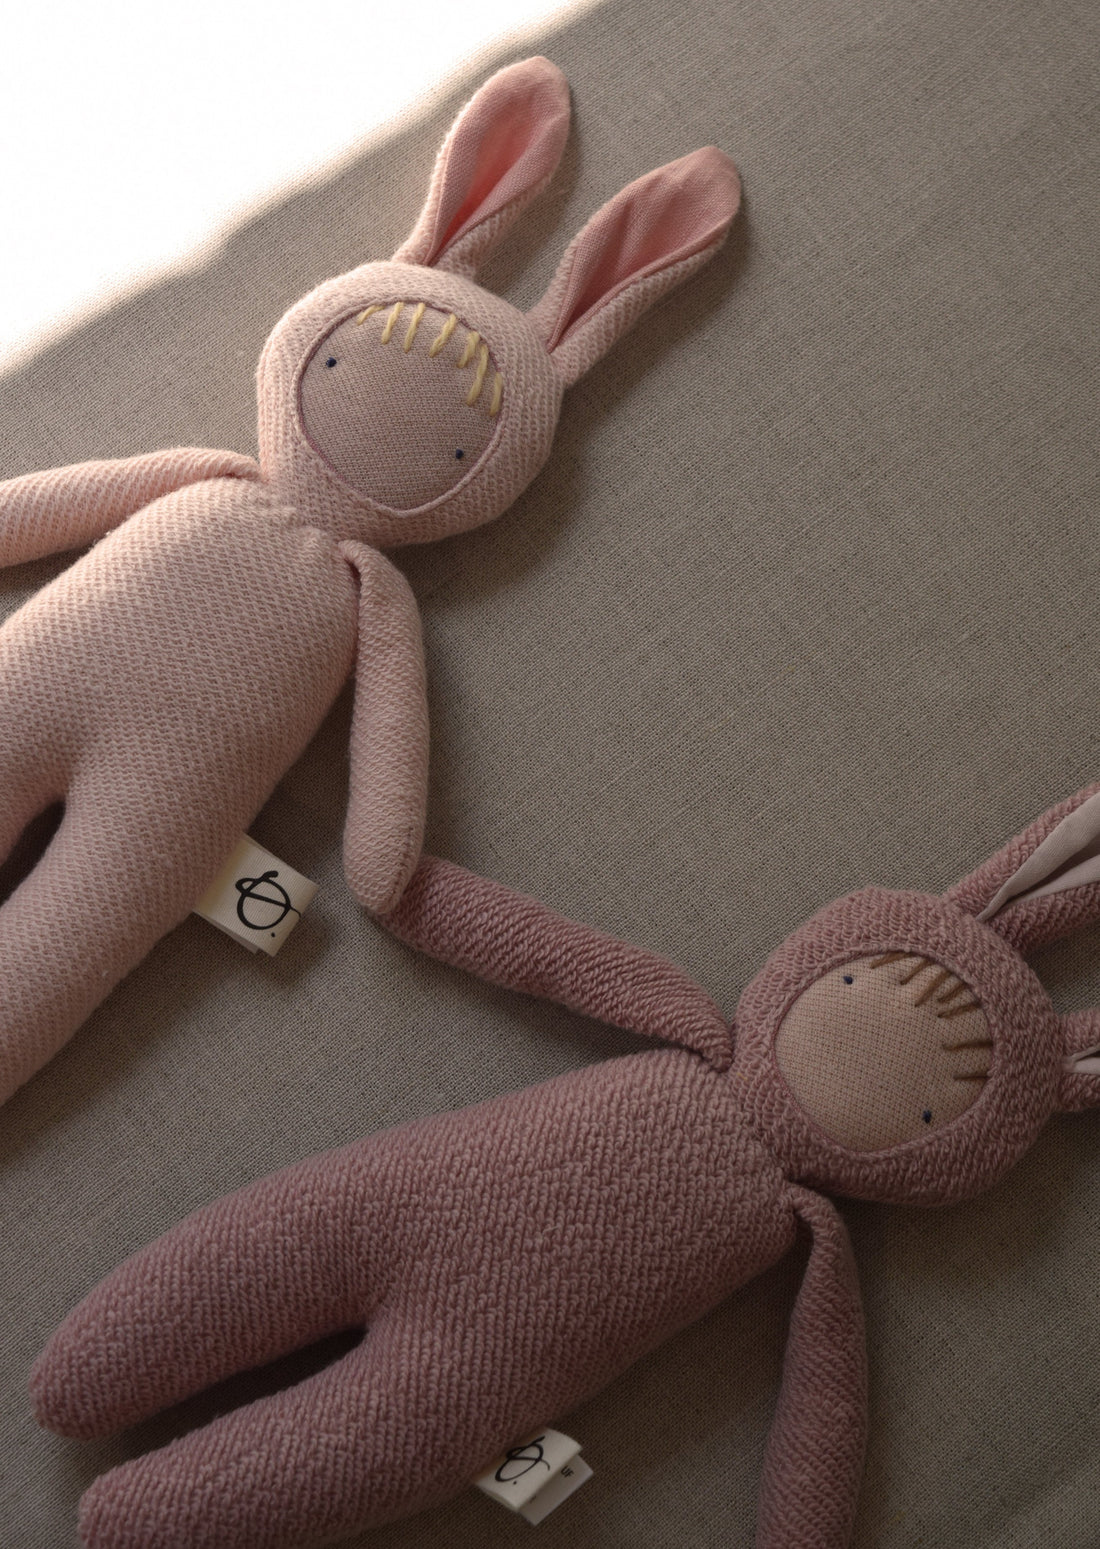 Mini poupée lapin par Ouistitine